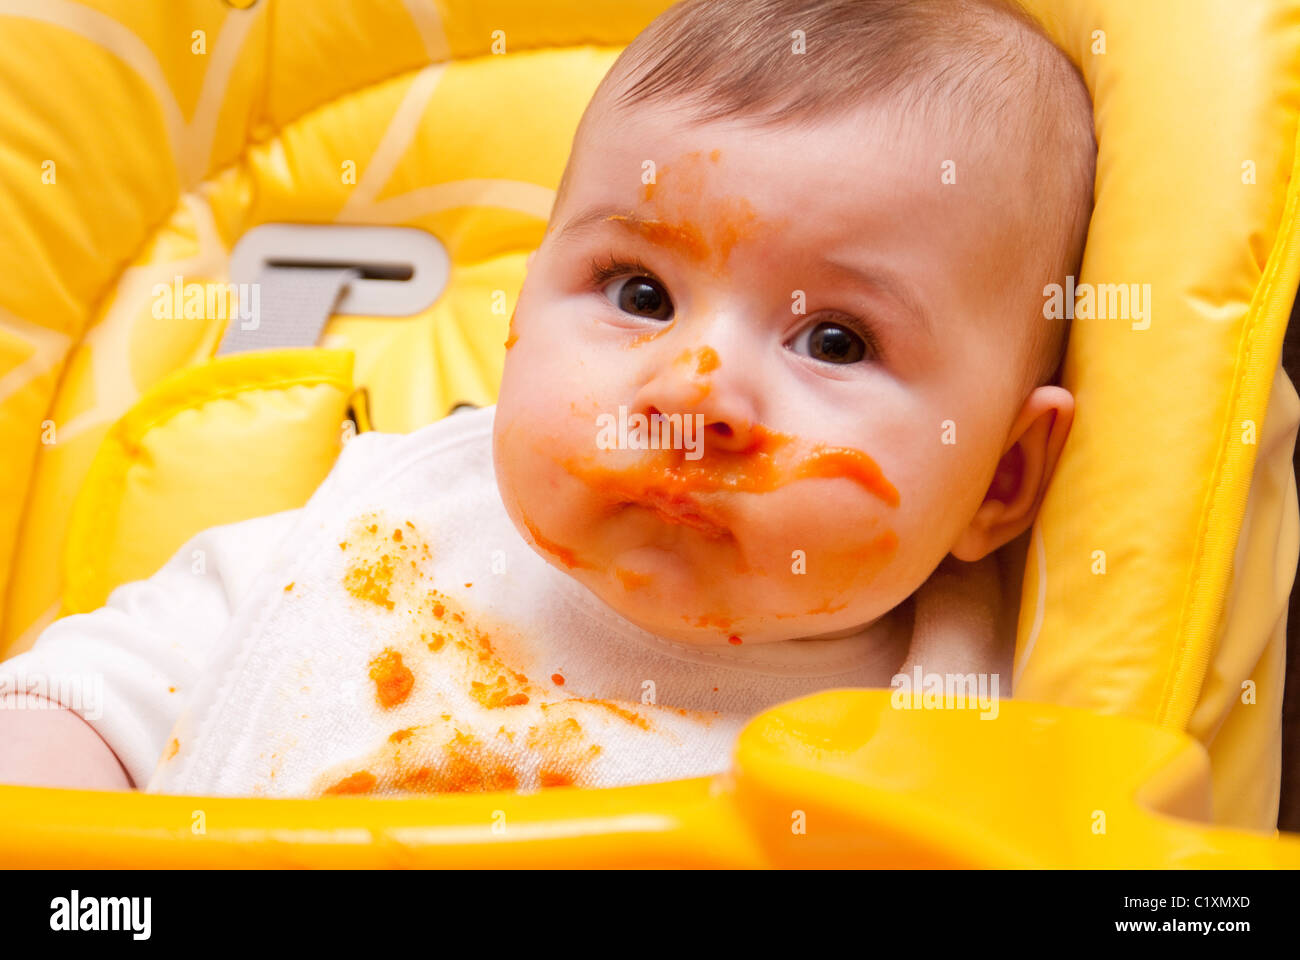 Bambino in sedia alta contemplati nei prodotti alimentari Foto Stock